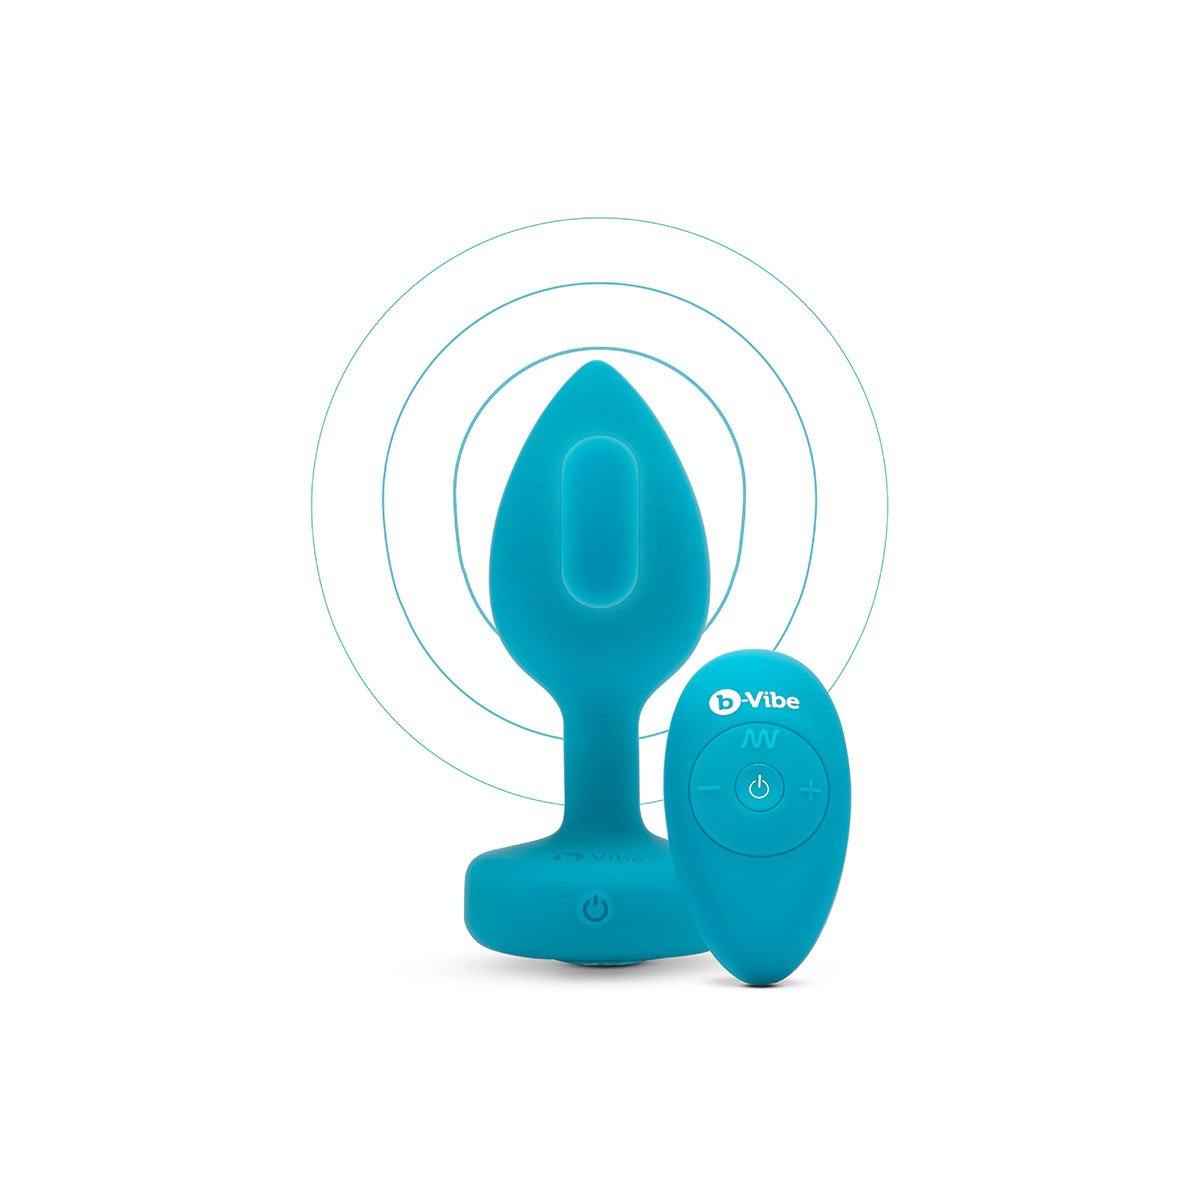 B-Vibe Vibrating Jewel Plug Small/Medium - Aqua - Buy At Luxury Toy X - Free 3-Day Shipping